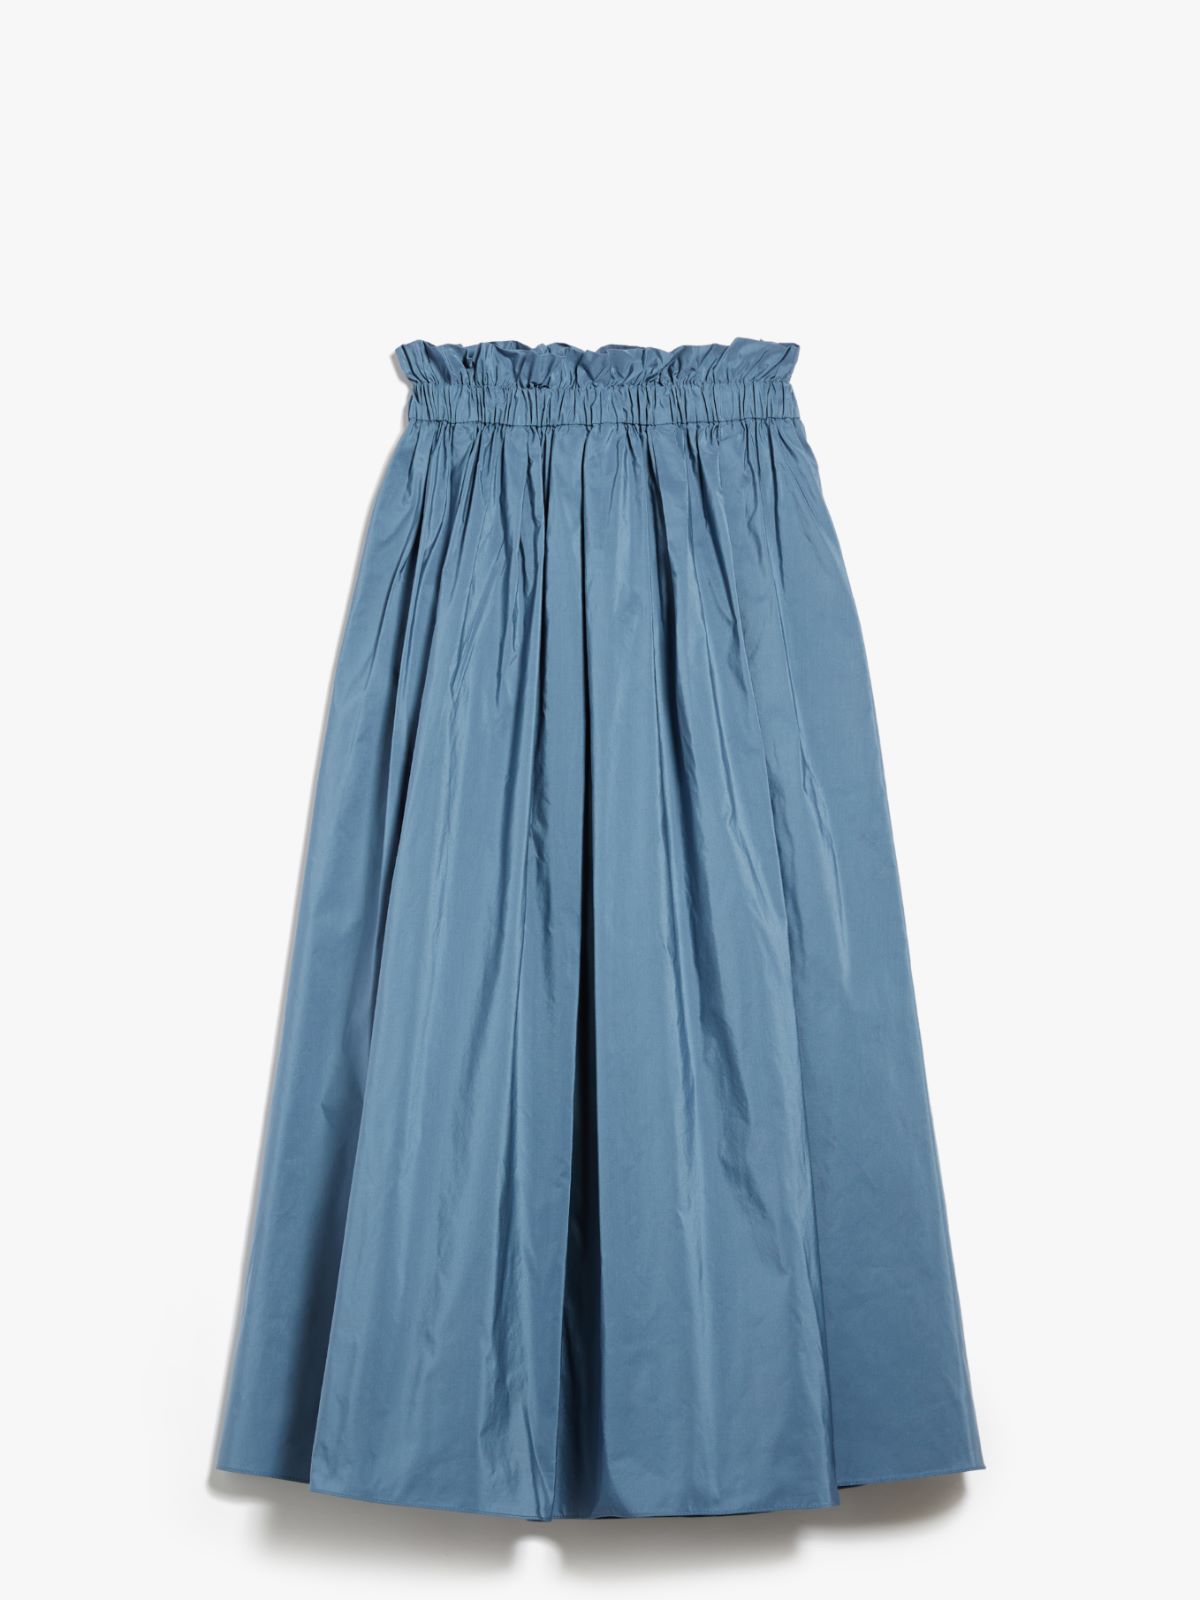 Cotton skirt - LIGHT BLUE - Weekend Max Mara - 5